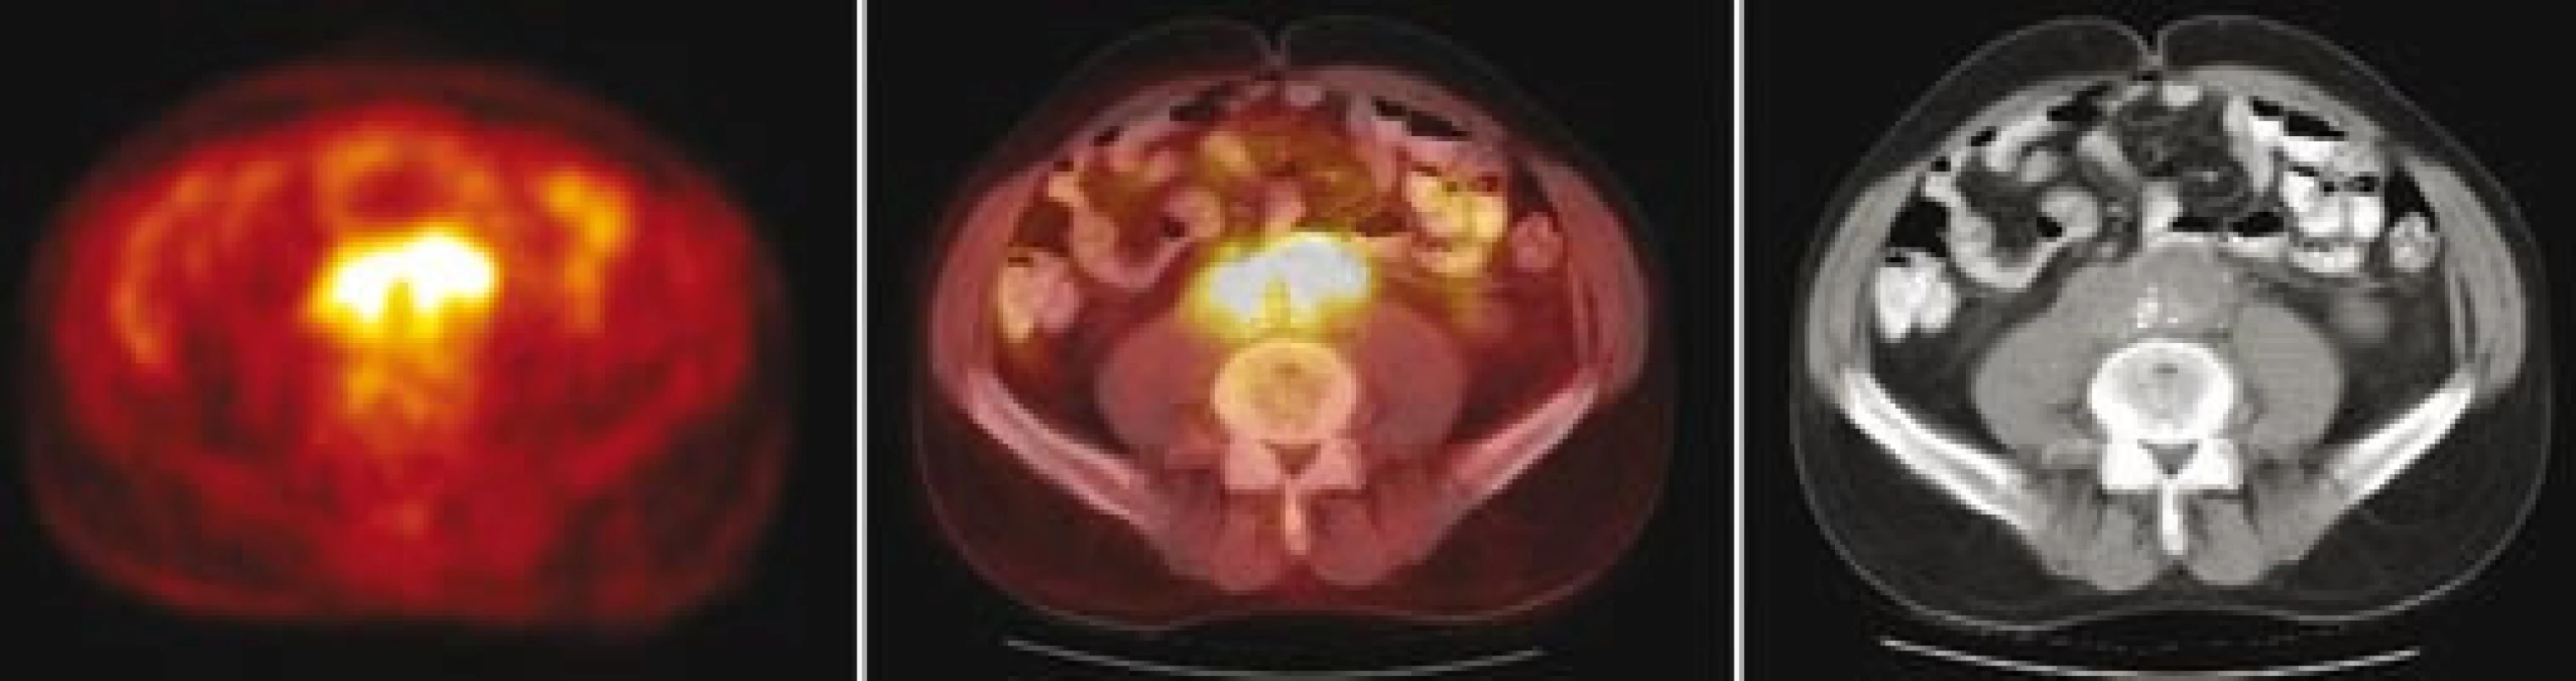 Fúze PET/ CT – transverzální řezy ve výši bifurkace aorty: vlevo obraz PET v barevné škále hot body, uprostřed fúzovaný obraz 50 % PET a 50 % CT, vpravo CT. Je patrná korelace metabolicky aktivní tkáně (PET) a lemu měkkotkáňových struktur kolem břišní aorty (CT).